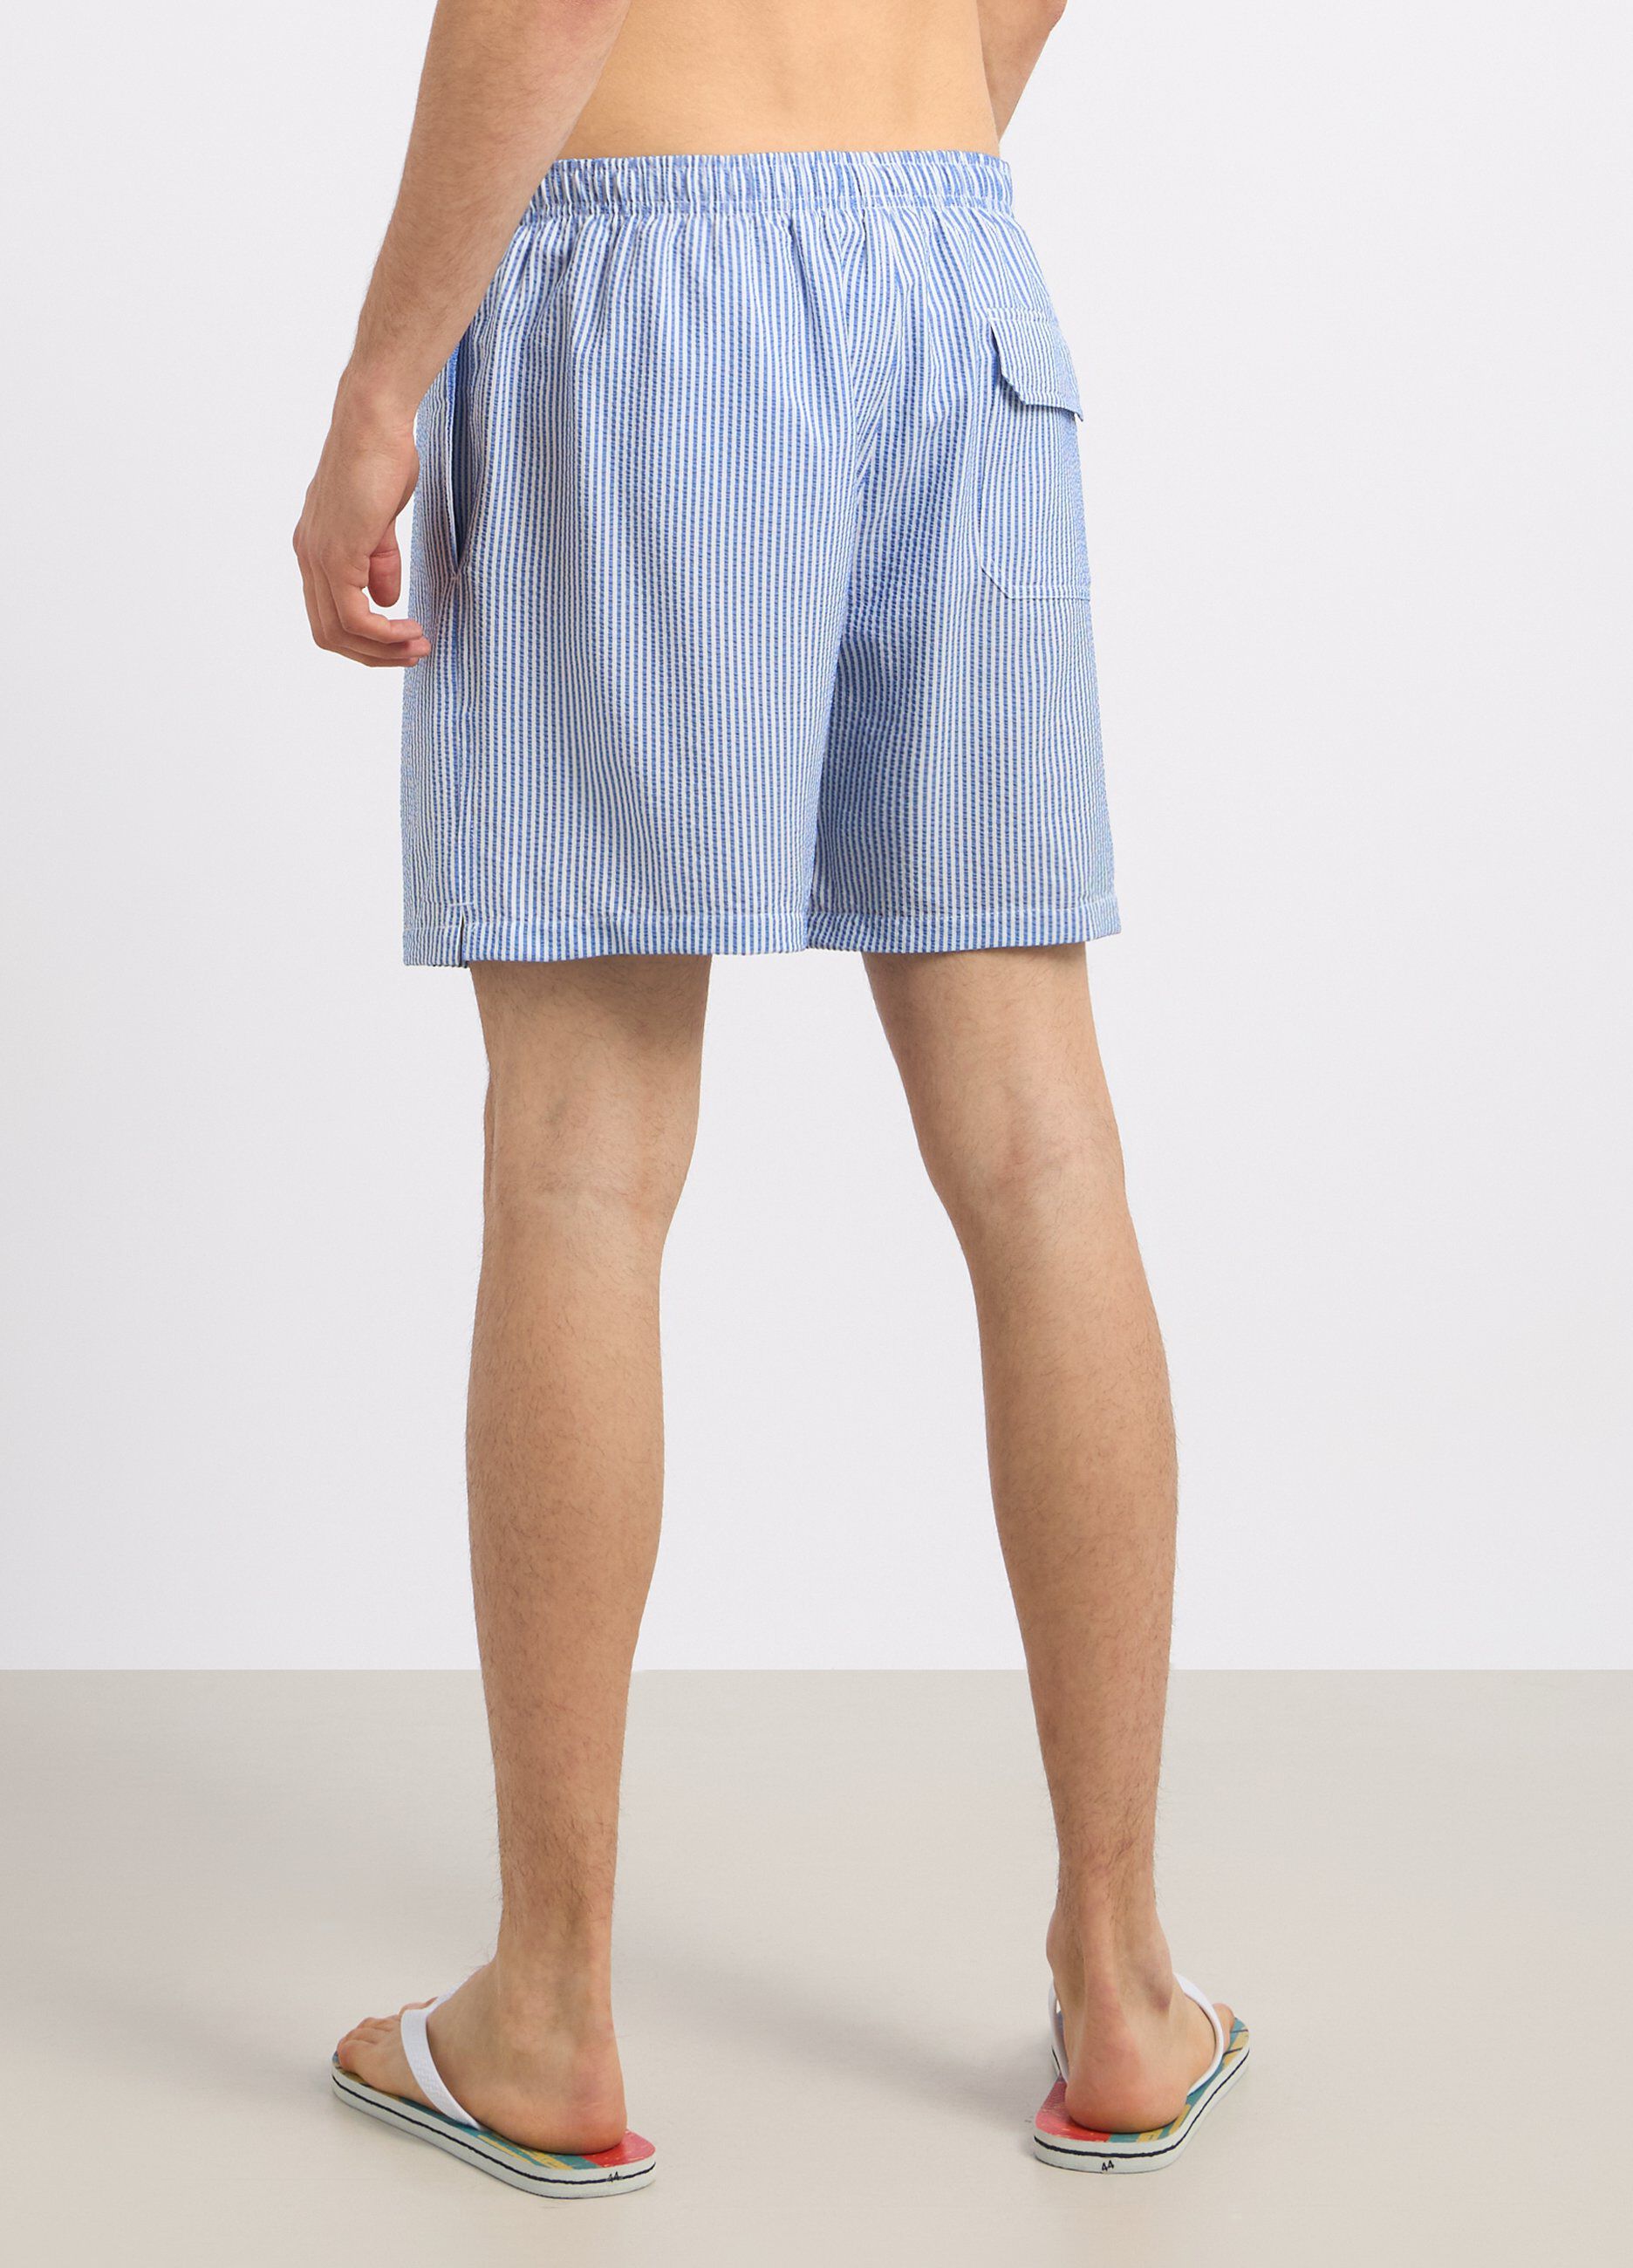 Costume shorts con motivo a righe uomo_1